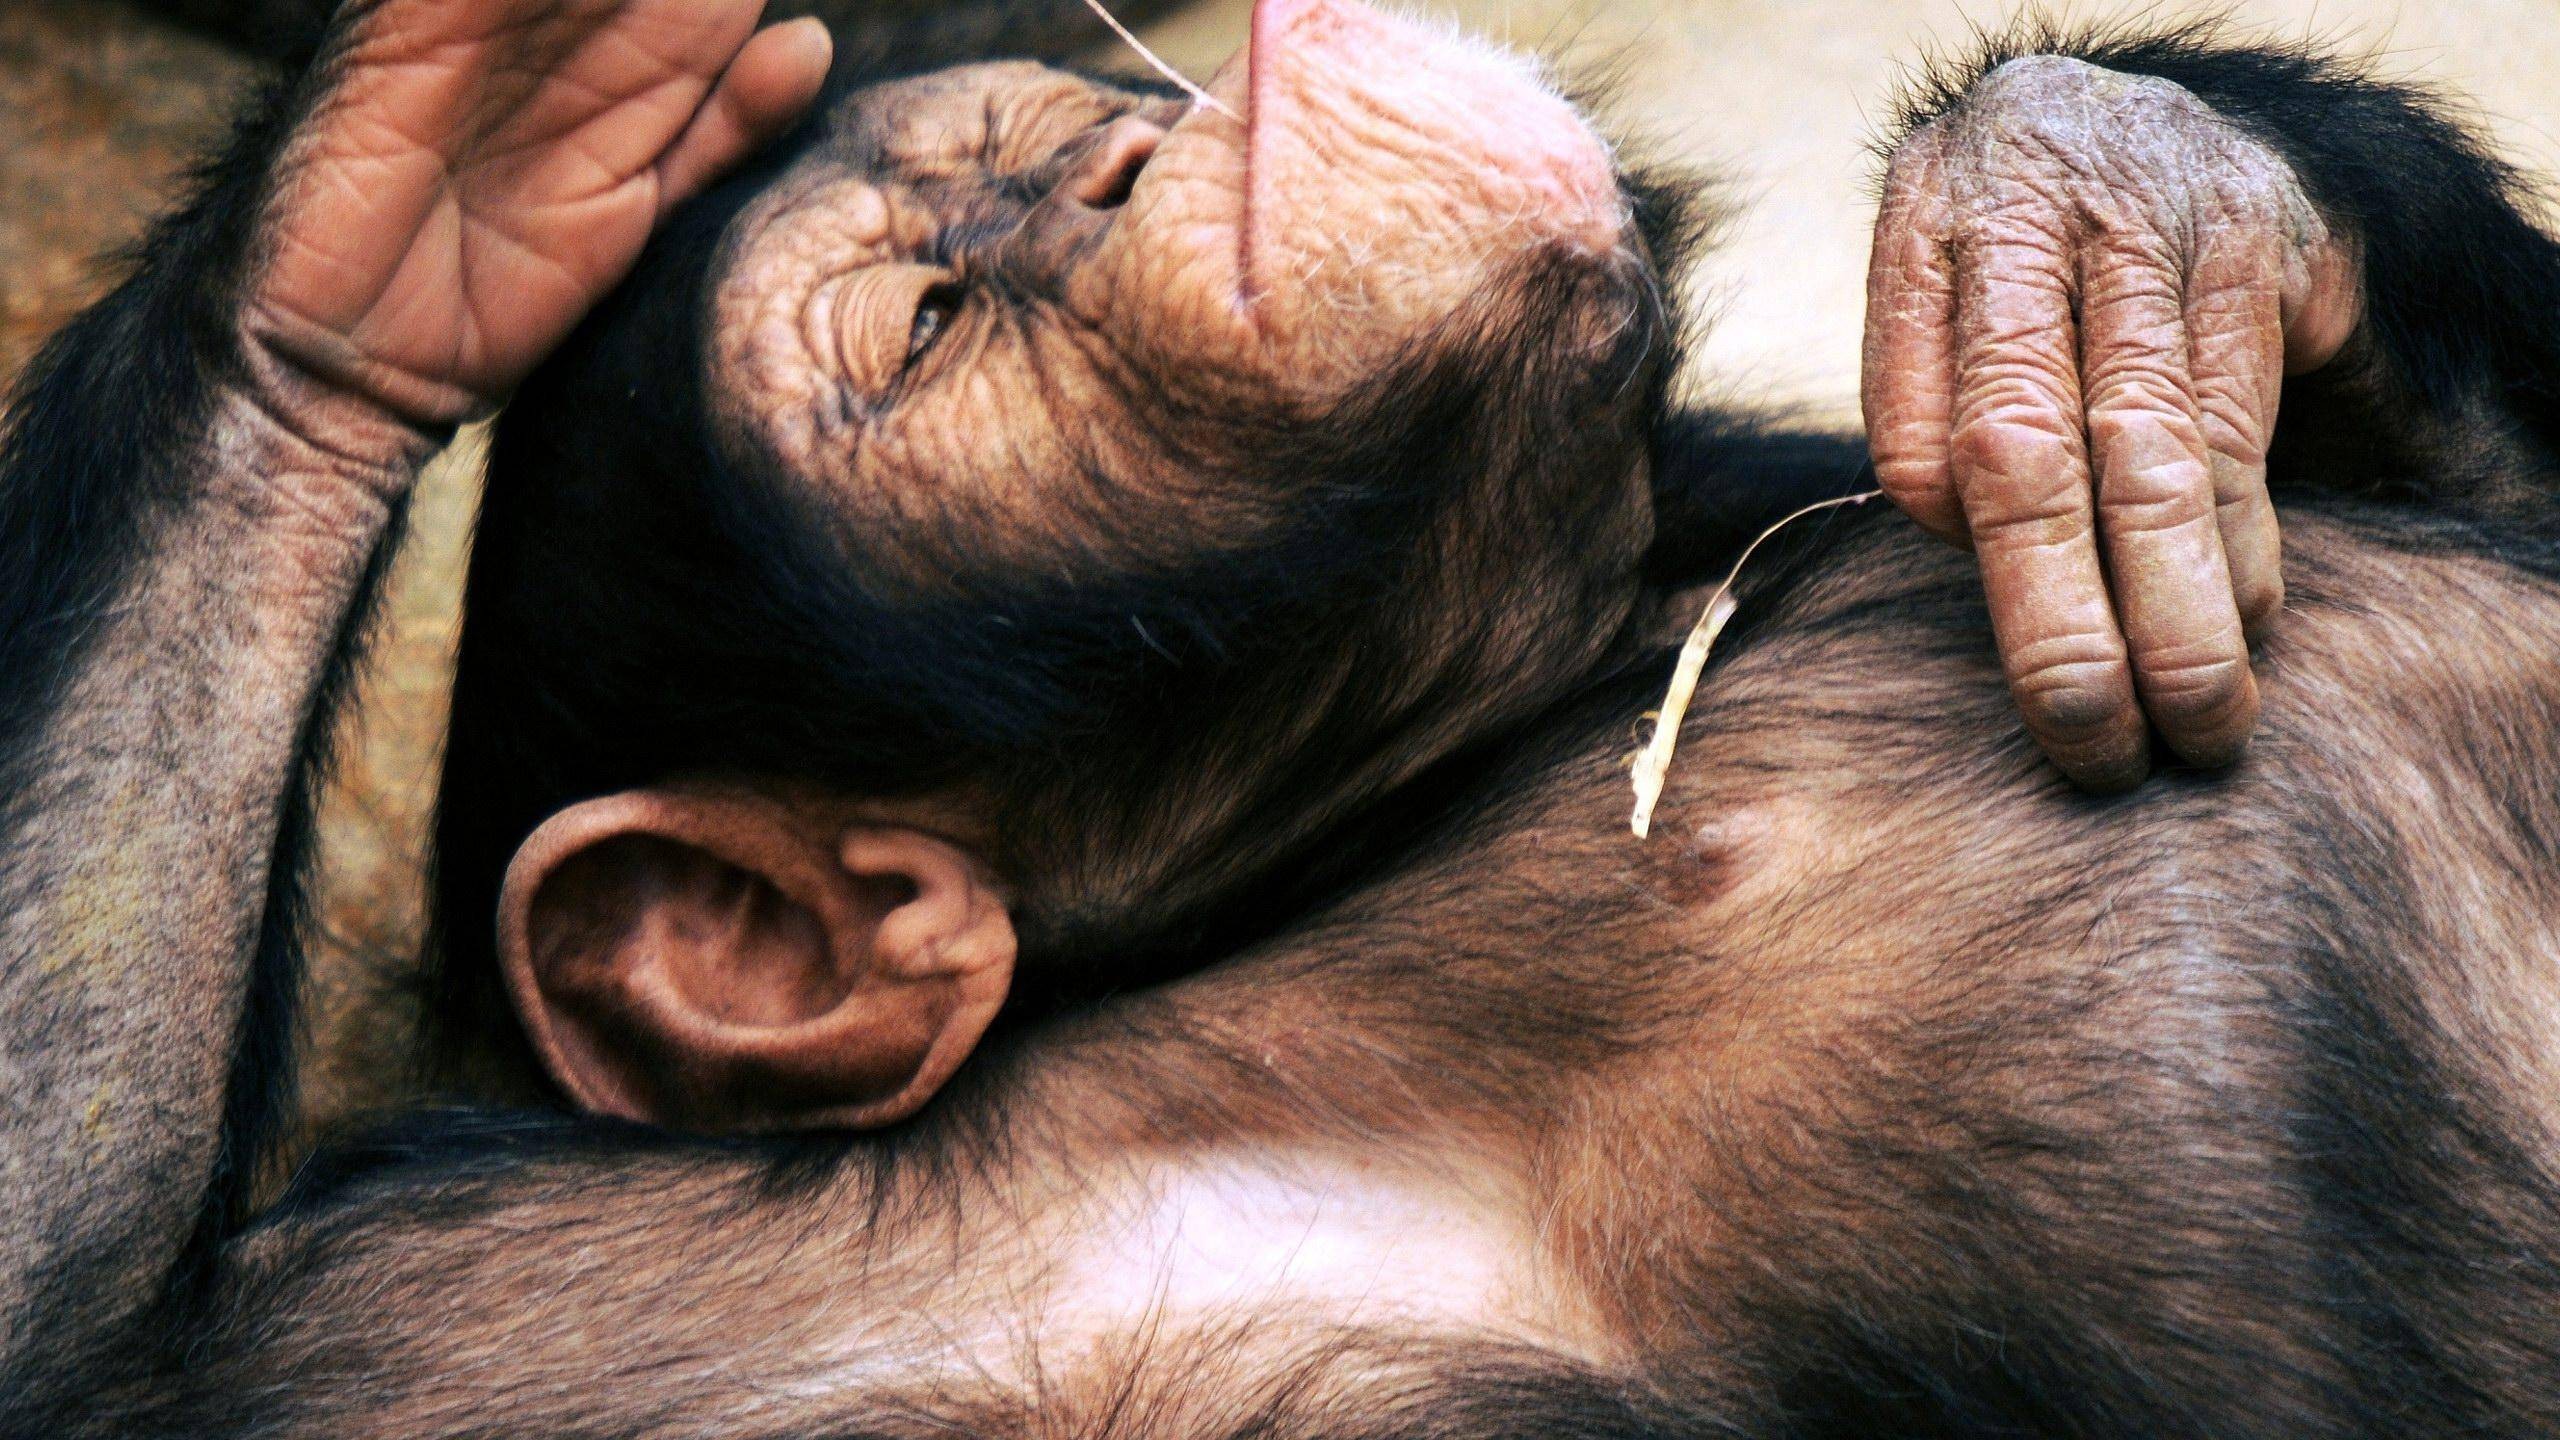 General 2560x1440 chimpanzees animals apes relaxing mammals closeup